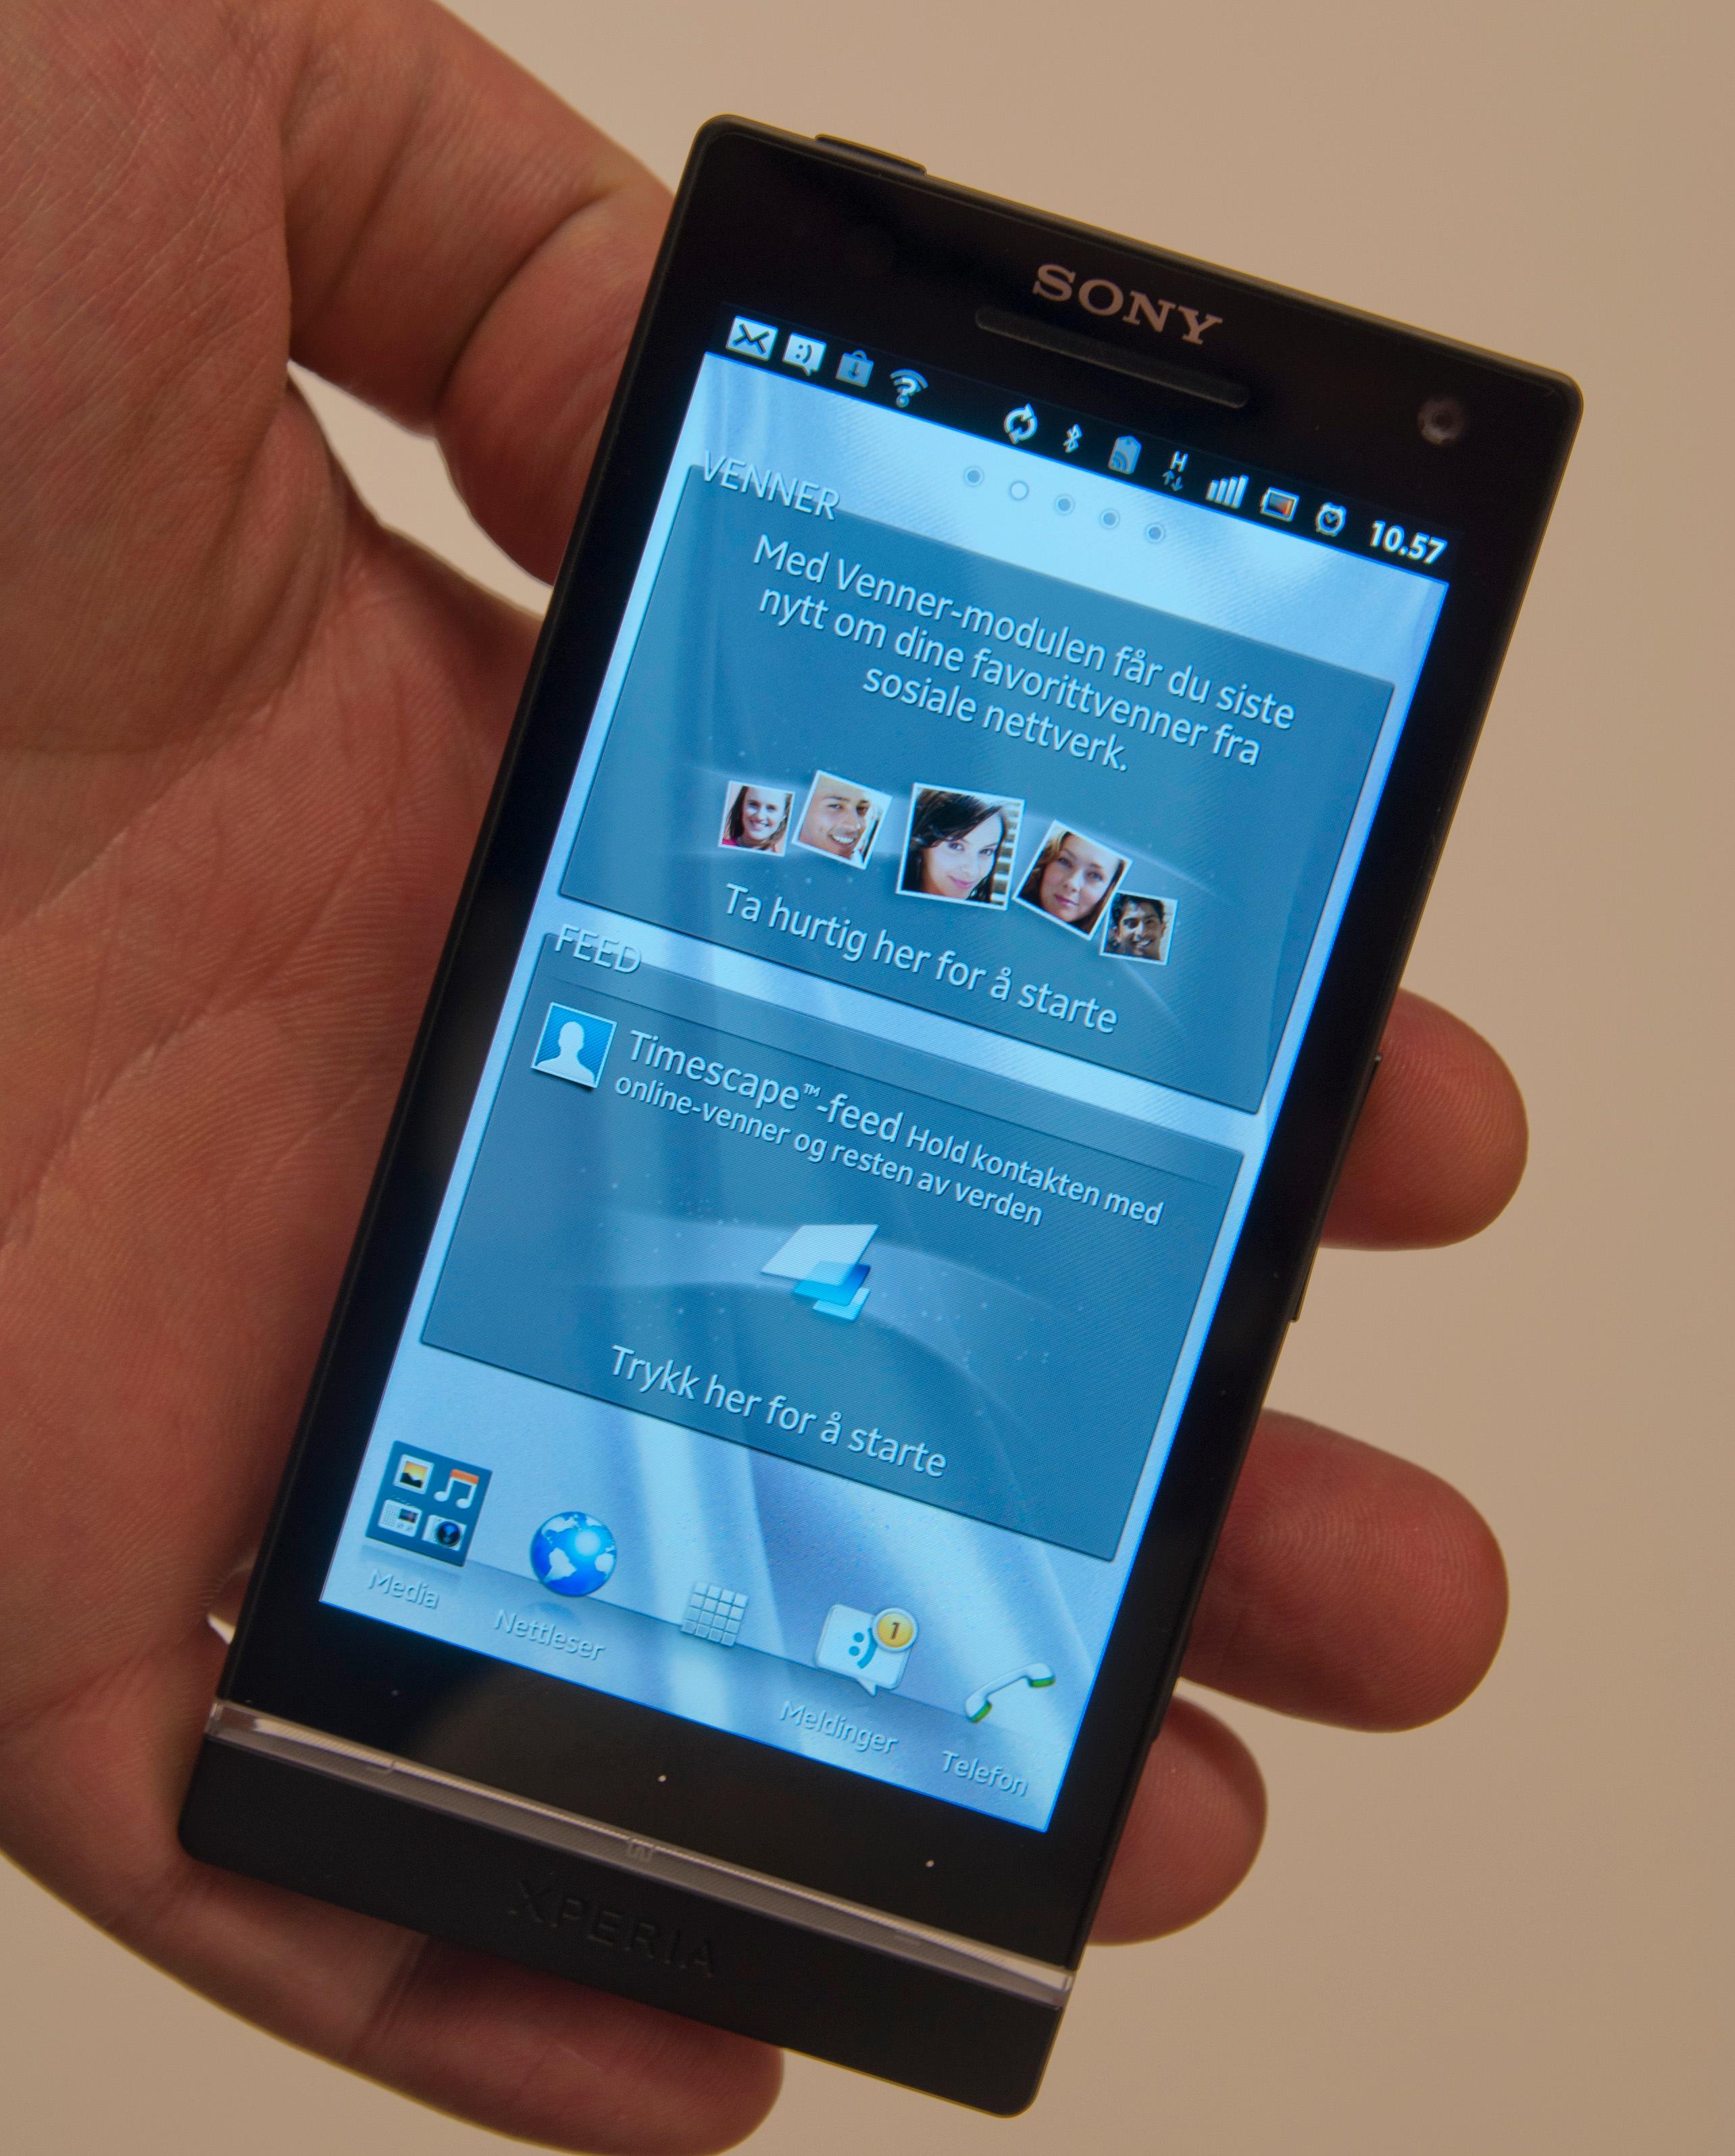 Xperia S kjører Google operativsystem Android, men Sony har gjort store endringer i menyene.